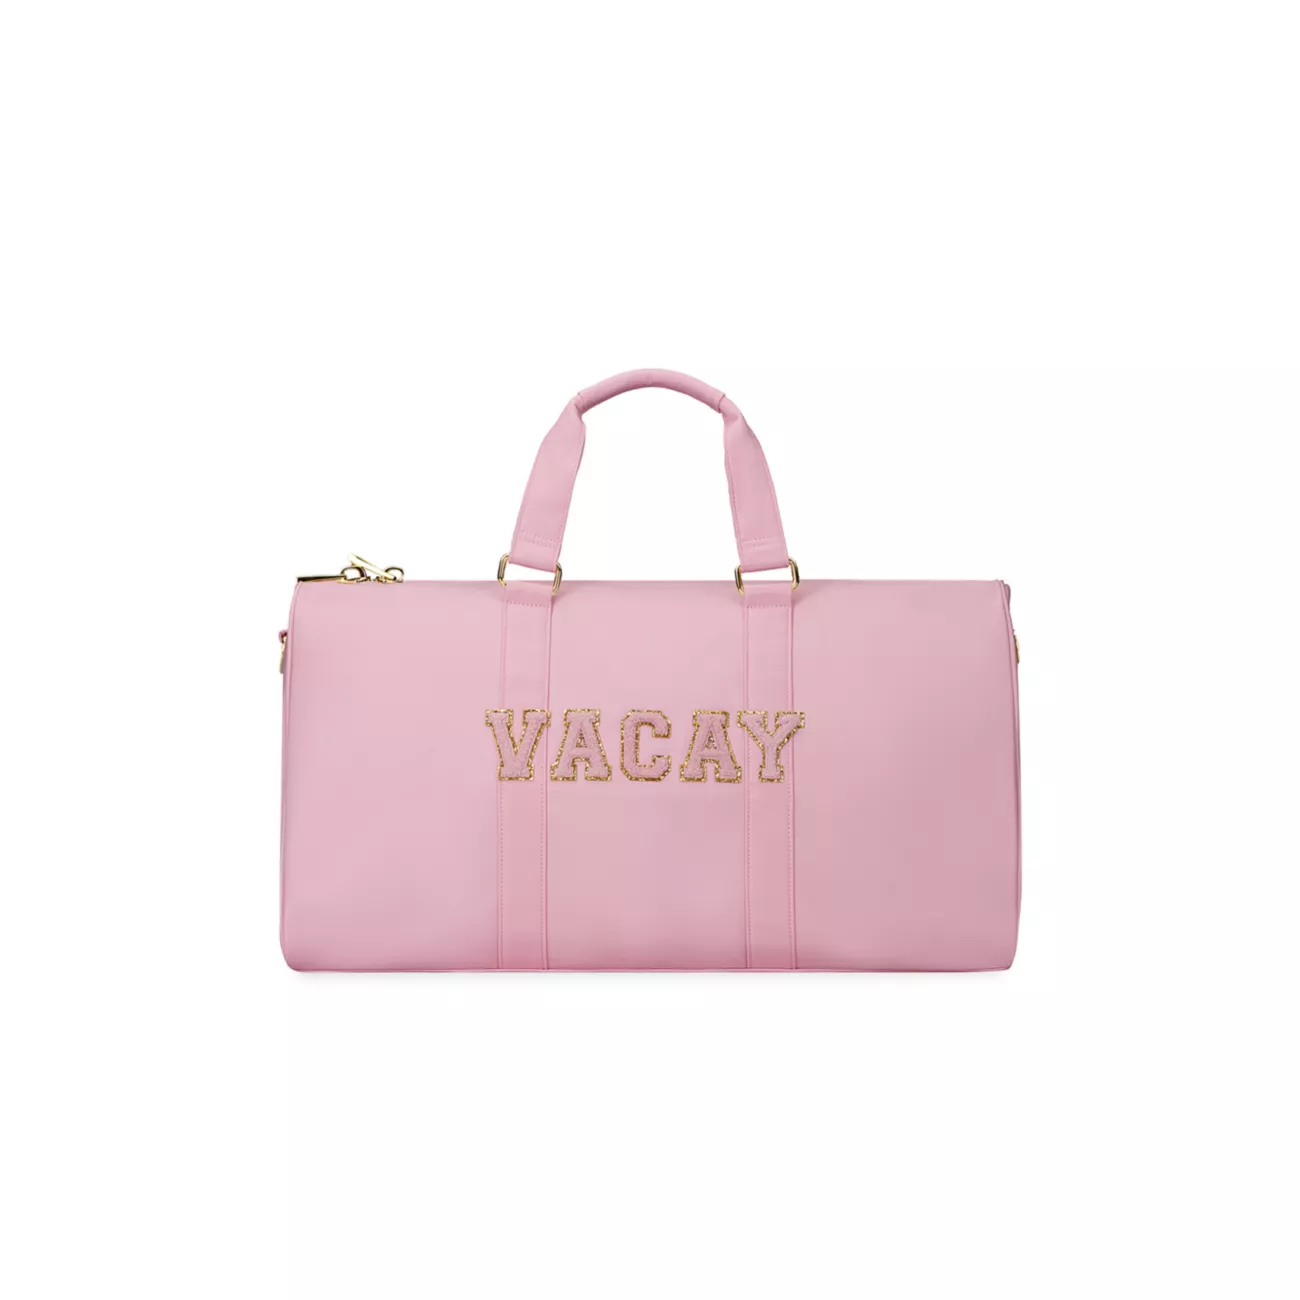 Классическая спортивная сумка Flamingo 'Vacay' Stoney Clover Lane